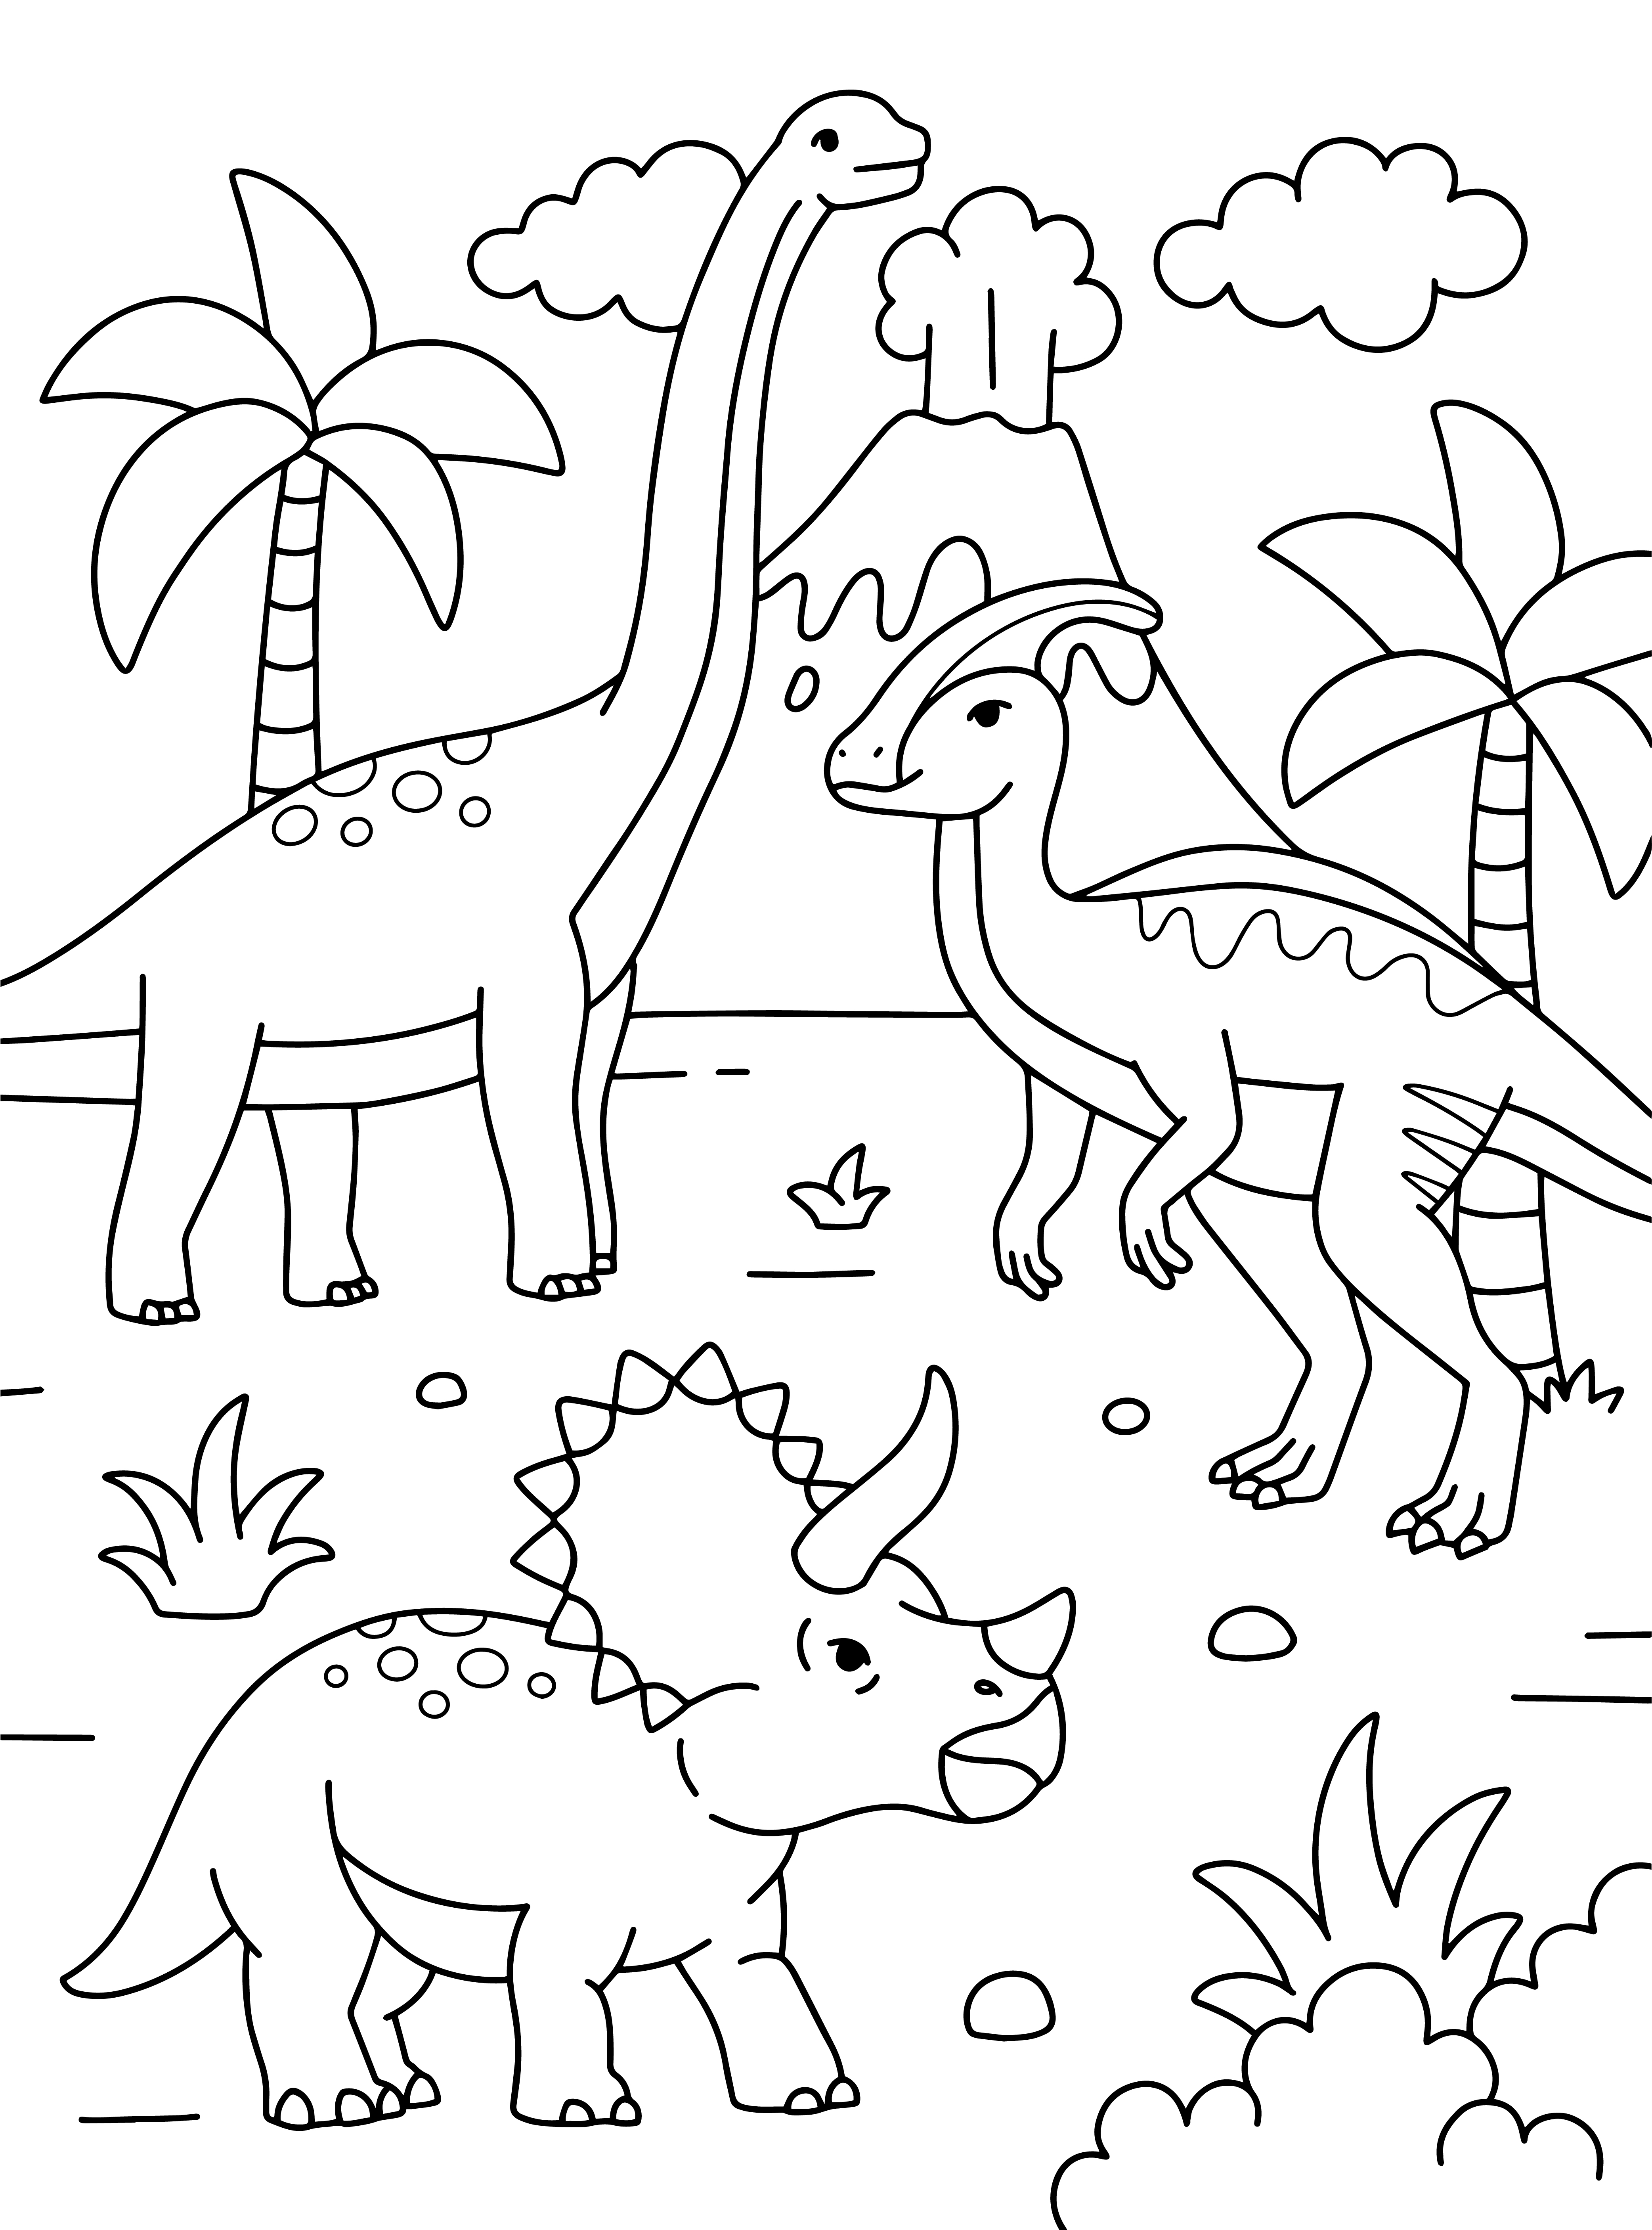 Раскраска динозавры из мультфильма на фоне горы формата А4 в высоком качестве